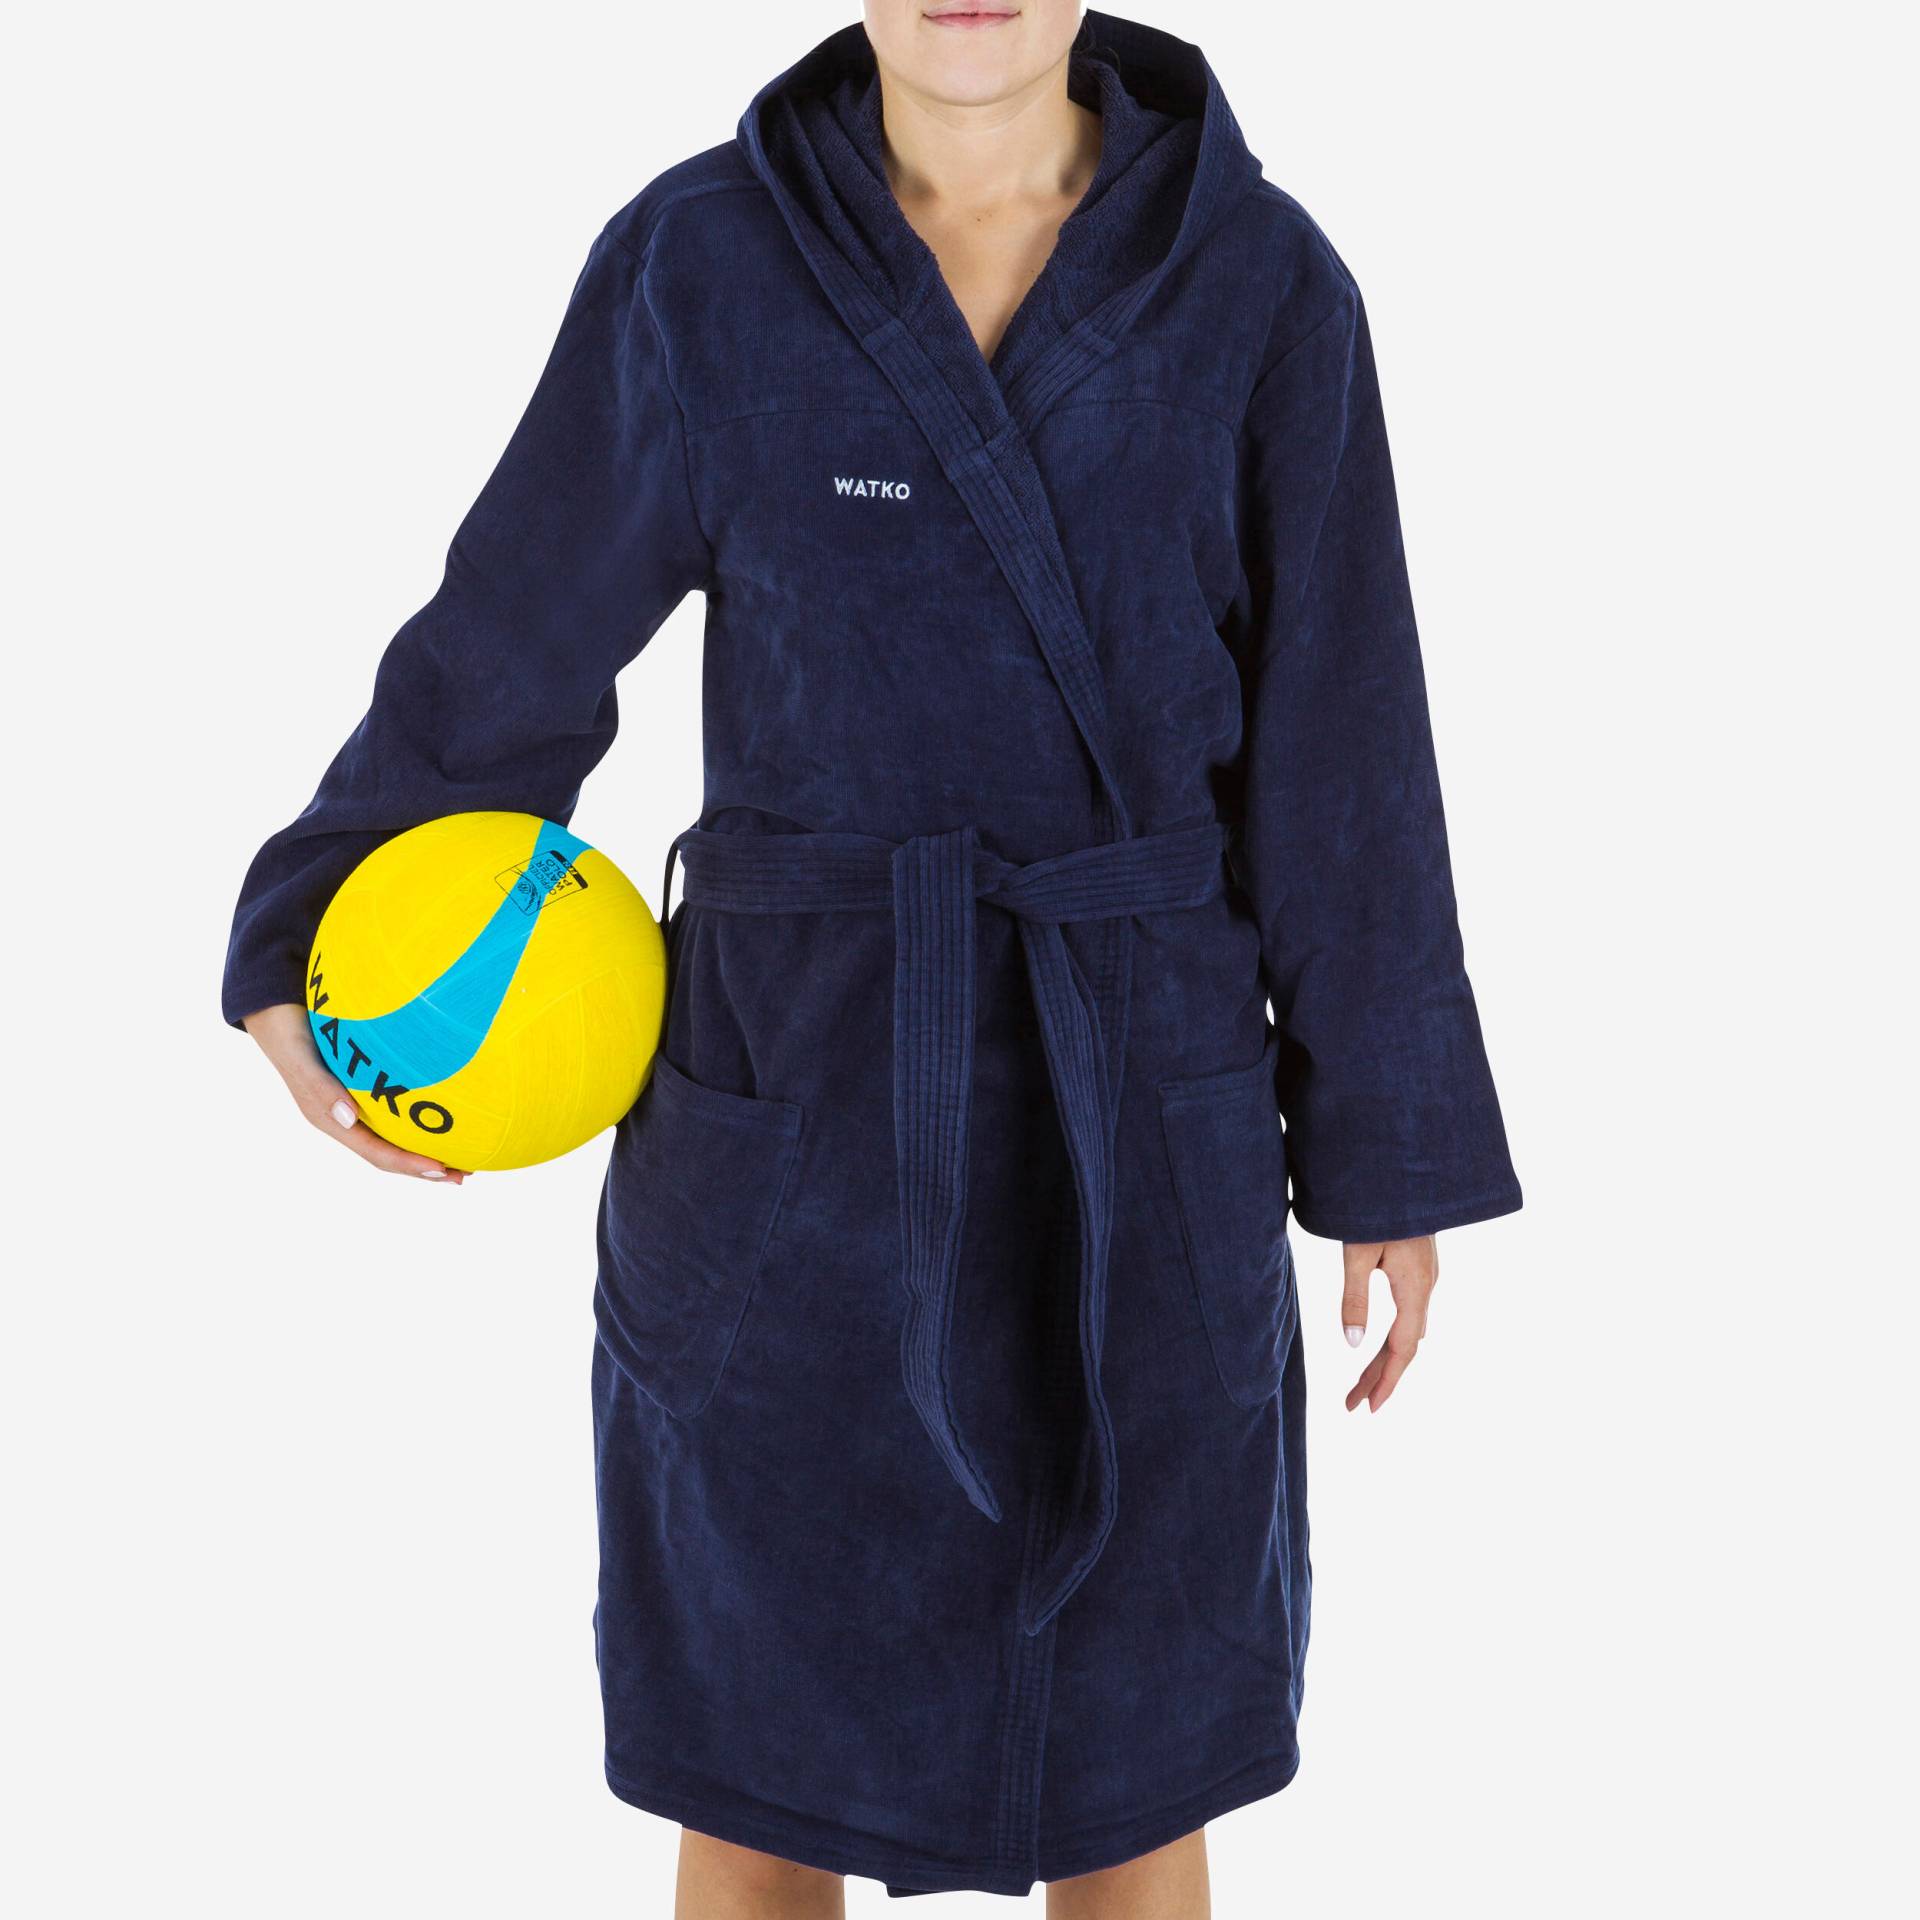 Bademantel Damen Baumwolle dick Wasserball - 900 dunkelblau von WATKO